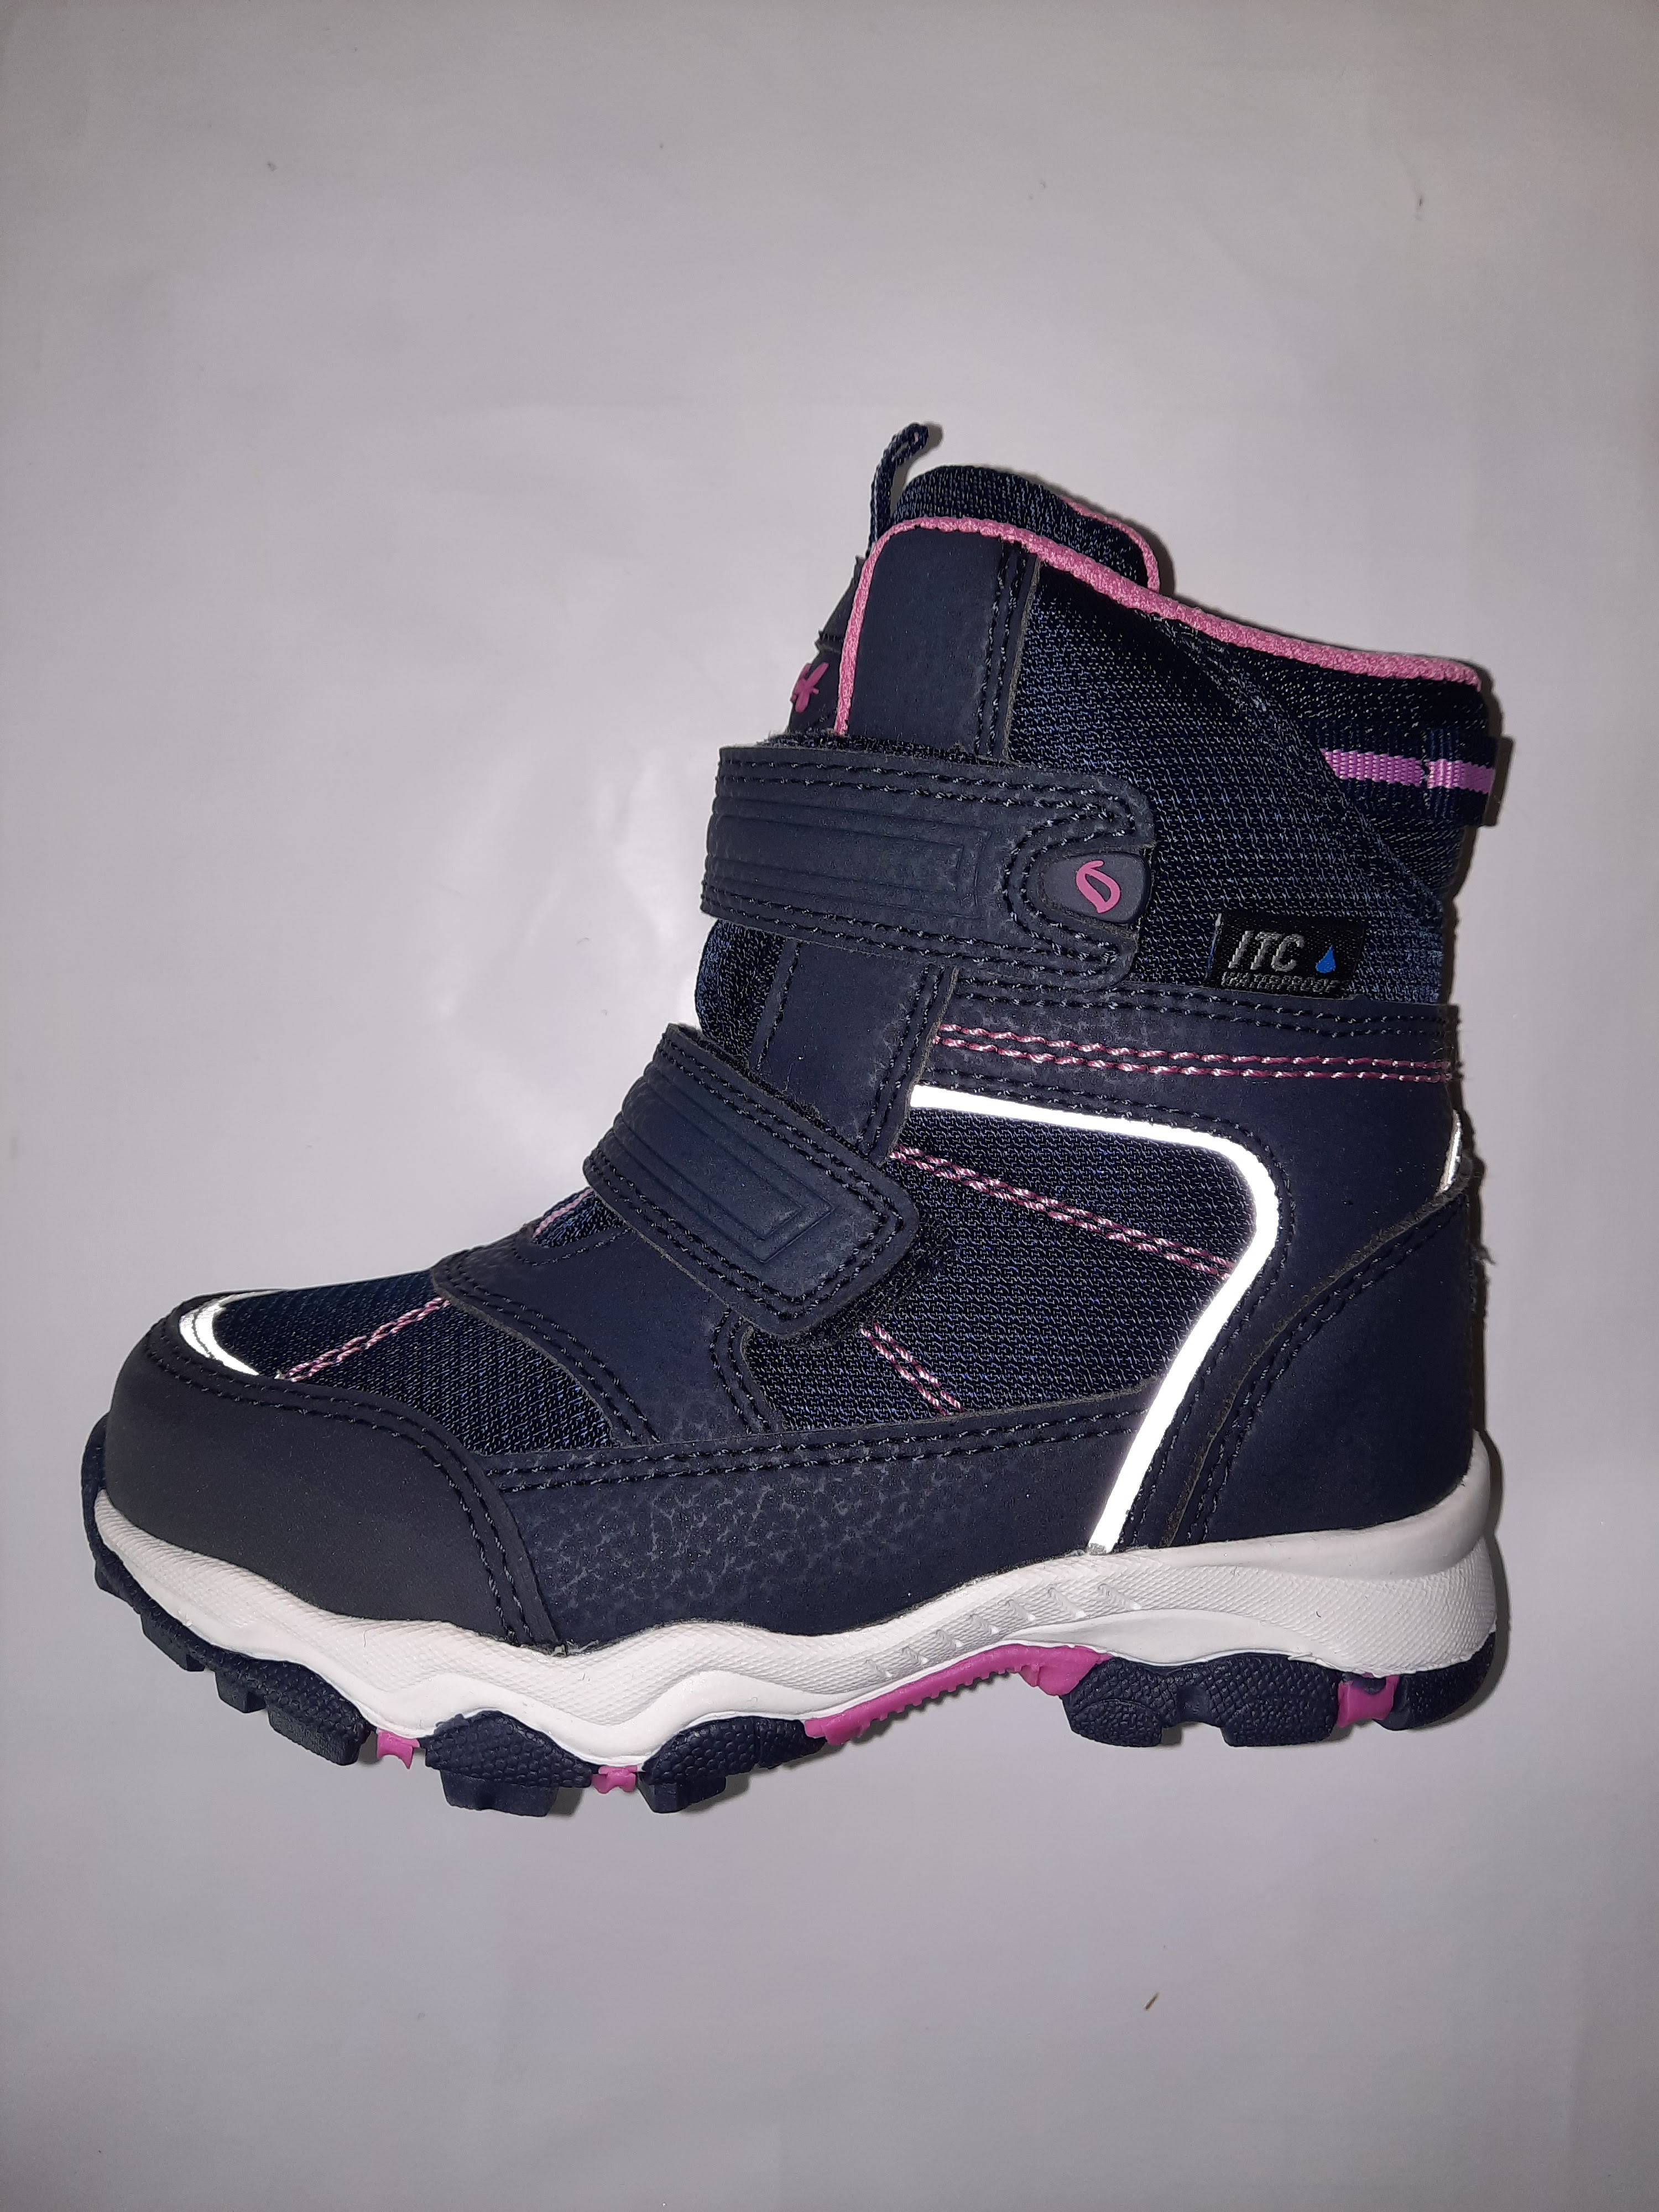 LEAF dívčí obuv Siljan navy/pink ITC Waterproof Velikost: 30